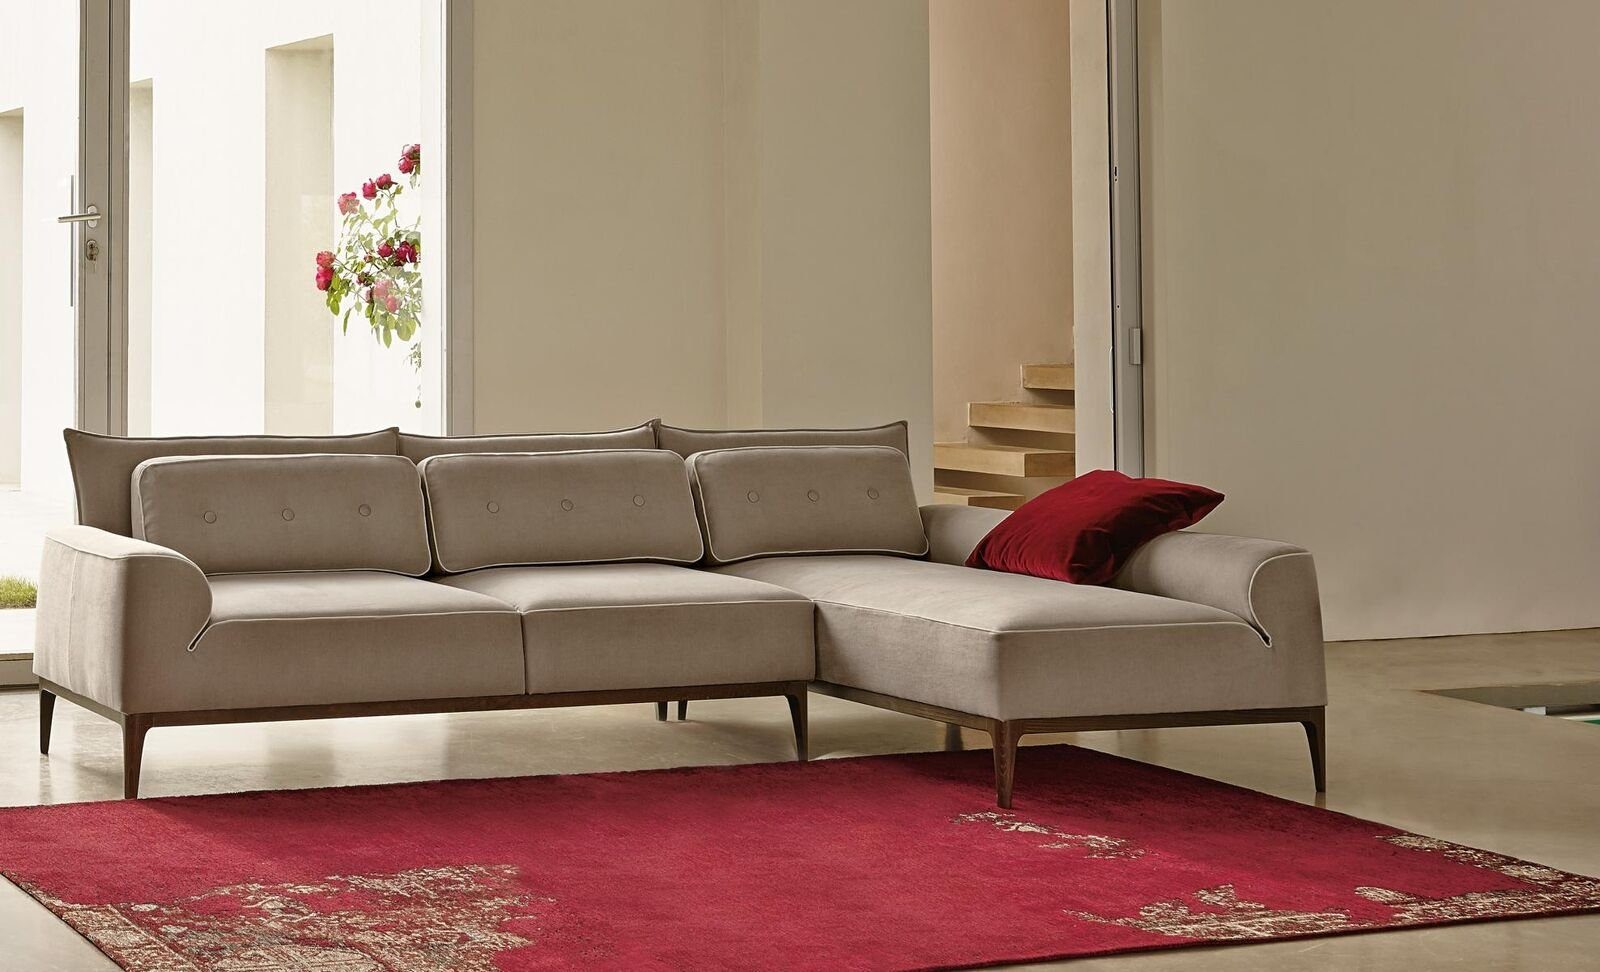 JVmoebel Ecksofa Ecksofa L Form Couch Möbel Grau Design Möbel Wohnzimmer Luxus Sofa